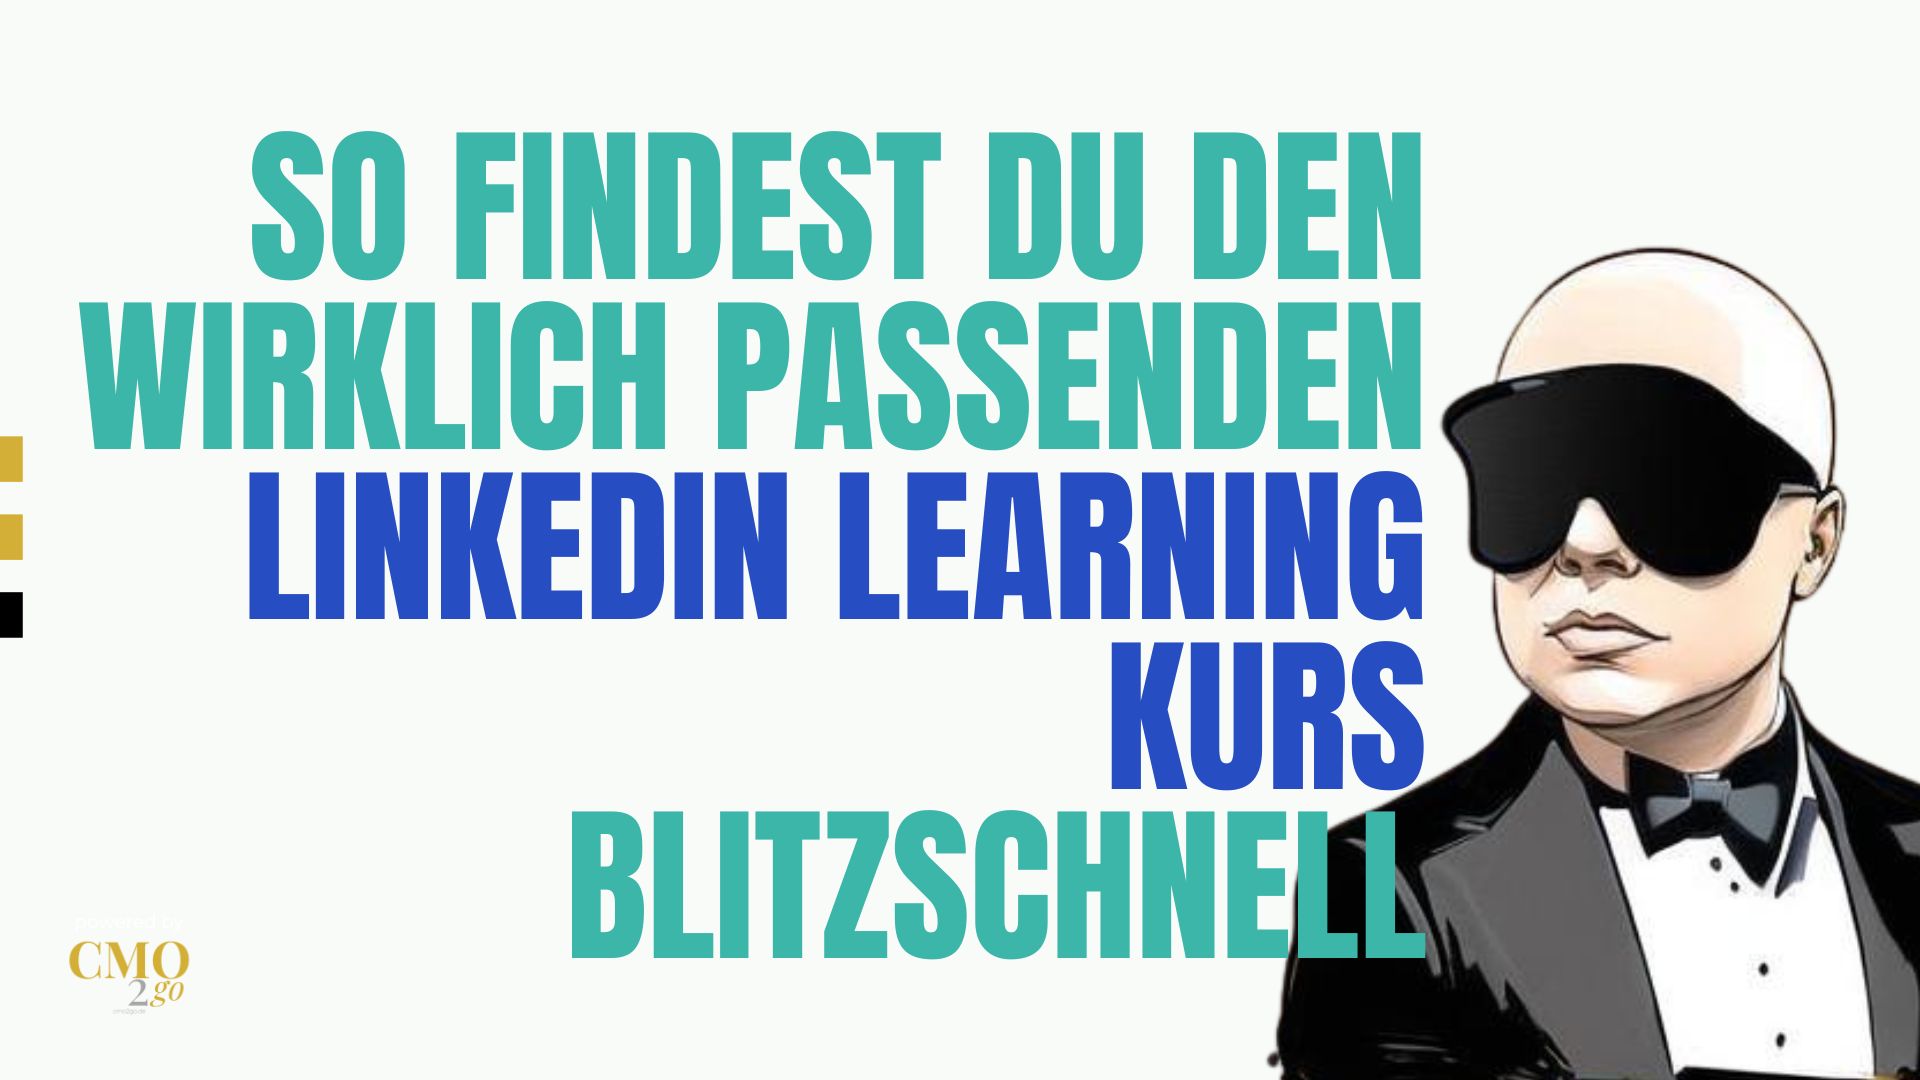 Linkedin linkedinlearning learning learning